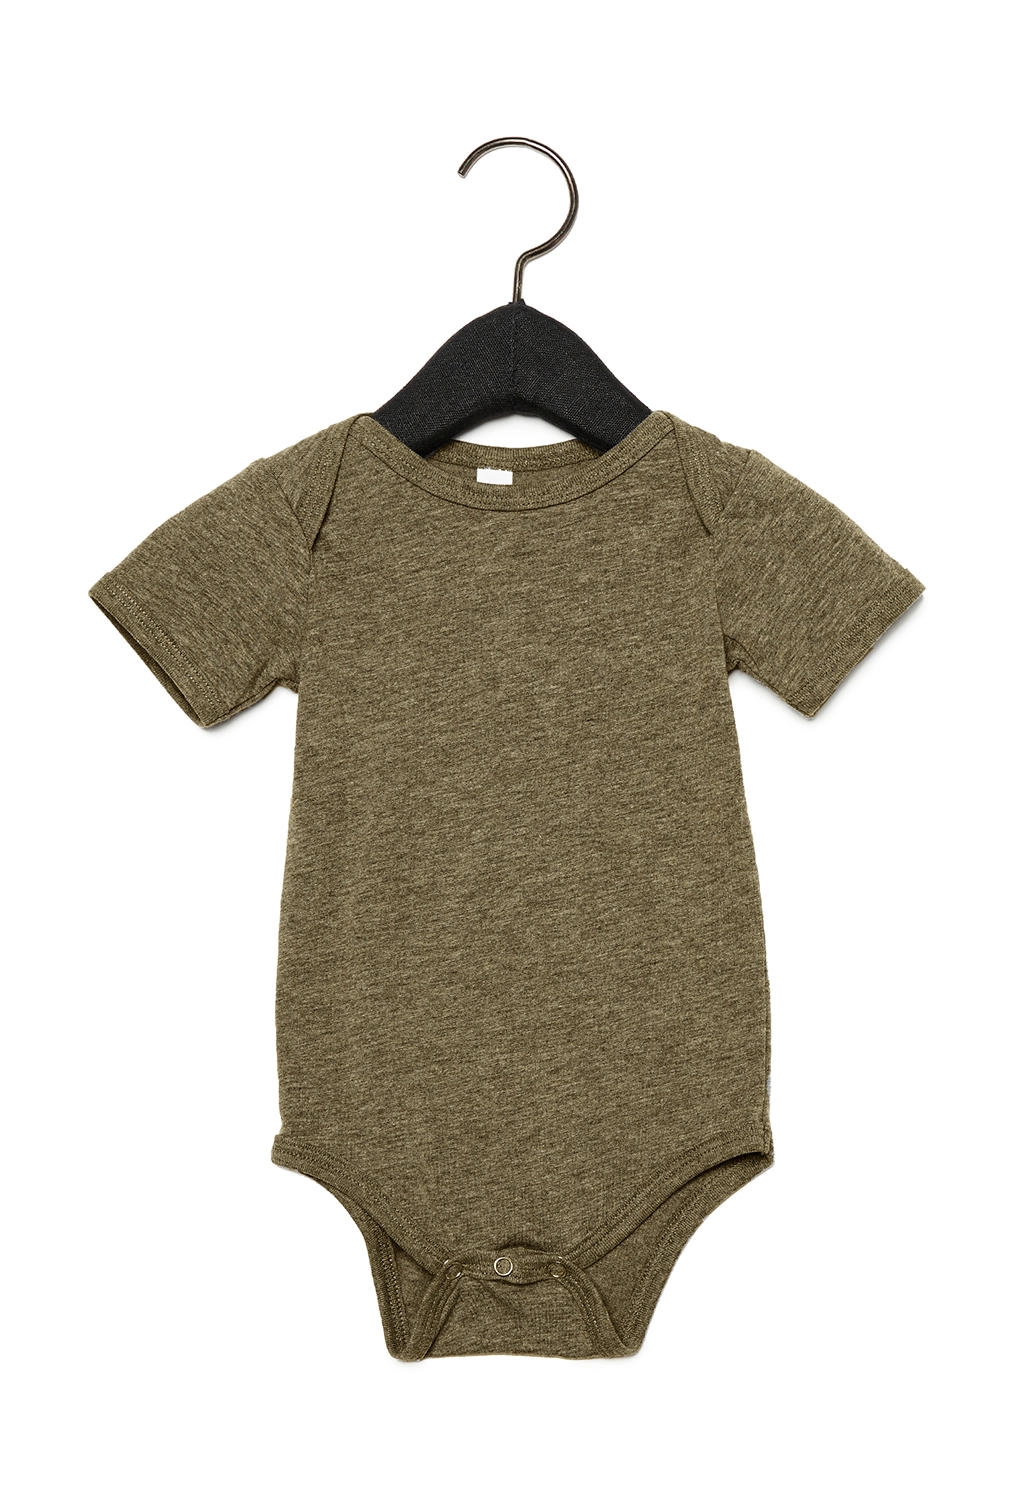 Baby Triblend Short Sleeve Onesie zum Besticken und Bedrucken in der Farbe Olive Triblend mit Ihren Logo, Schriftzug oder Motiv.